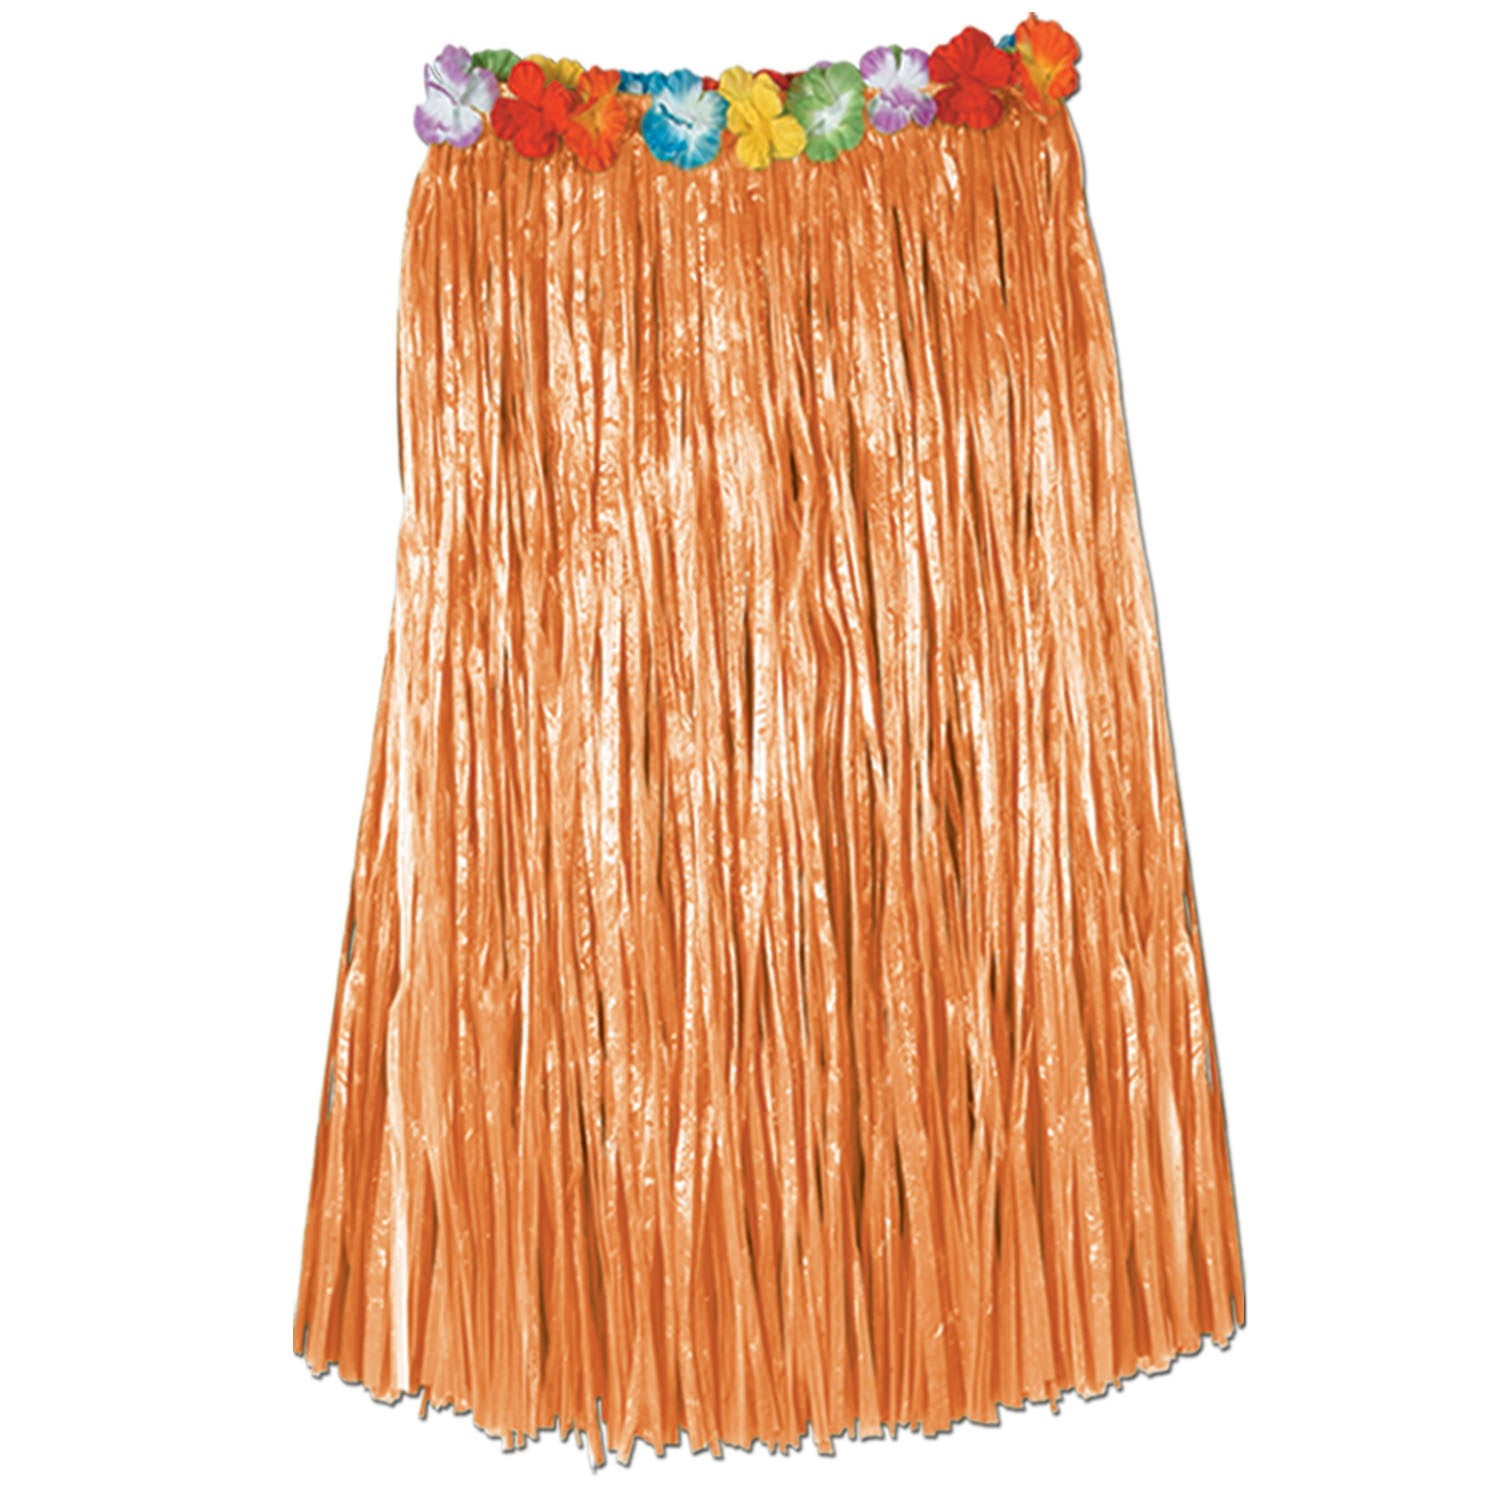 Adult Artificial Grass Hula Skirt